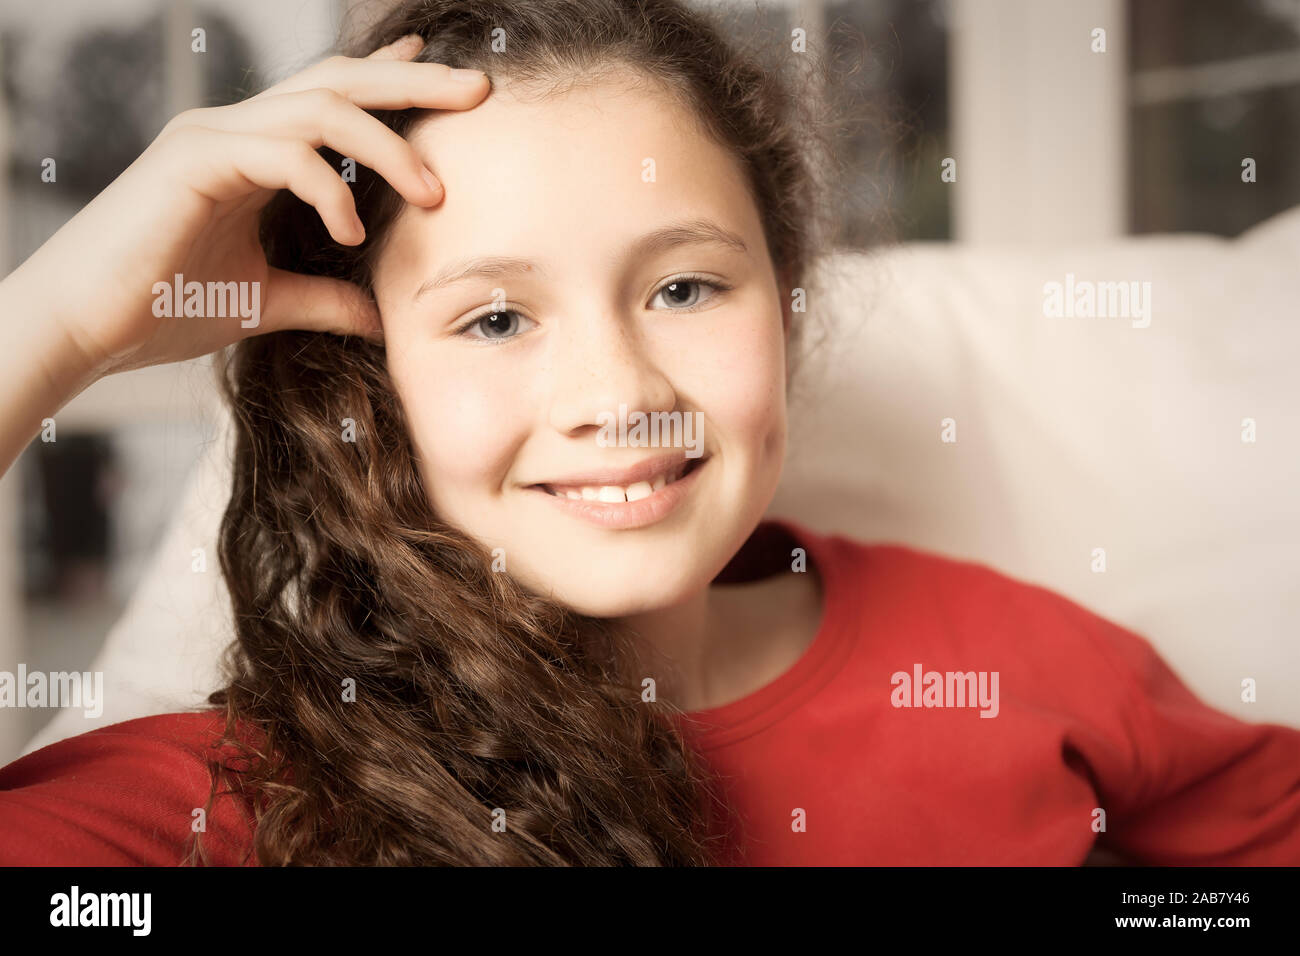 Ein Portrait eines jungen Maedchens im Roten Pullover Foto Stock